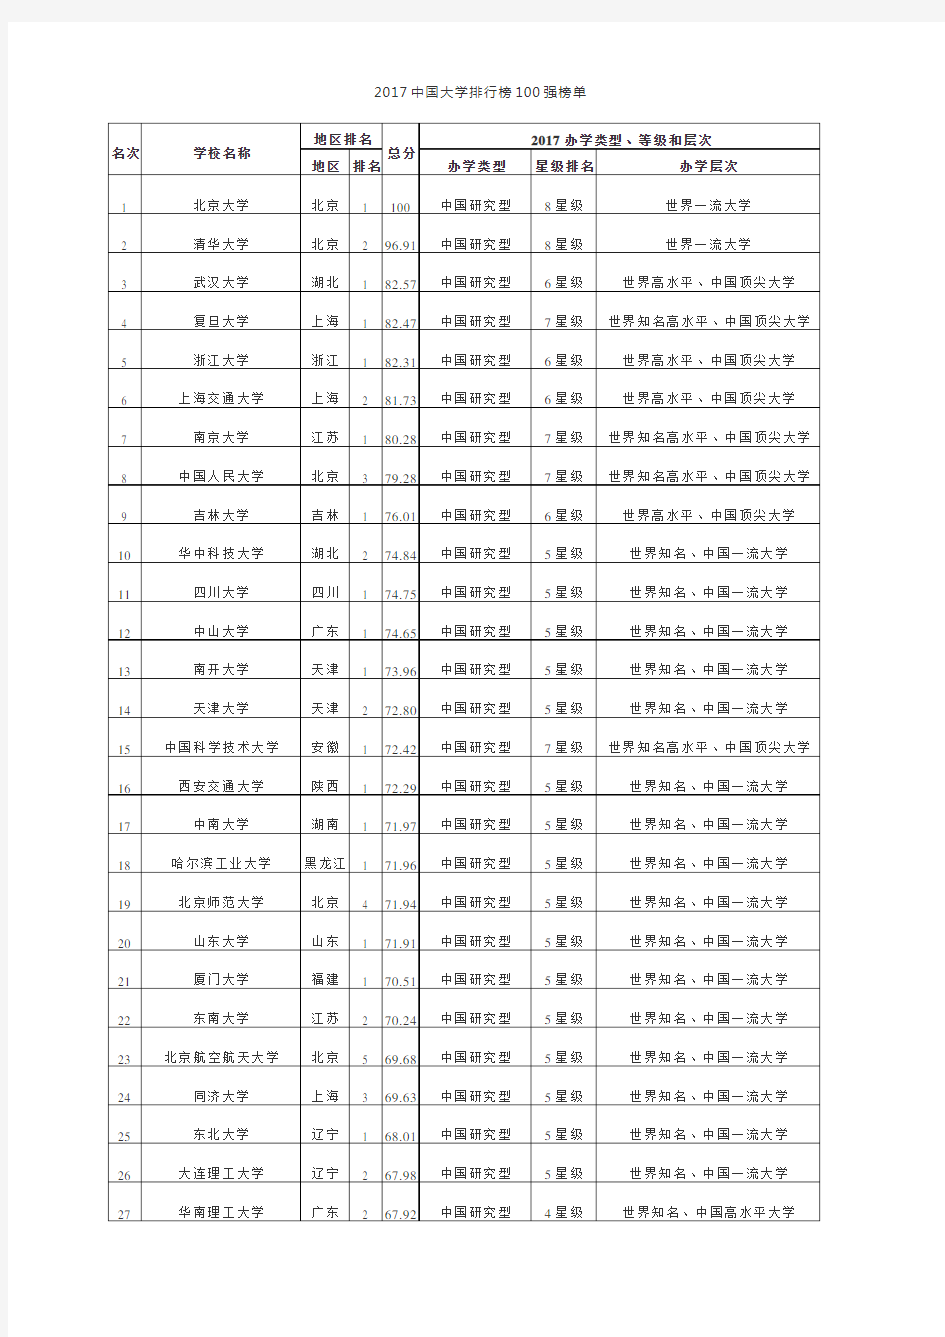 2017年中国高校排名(前500名)